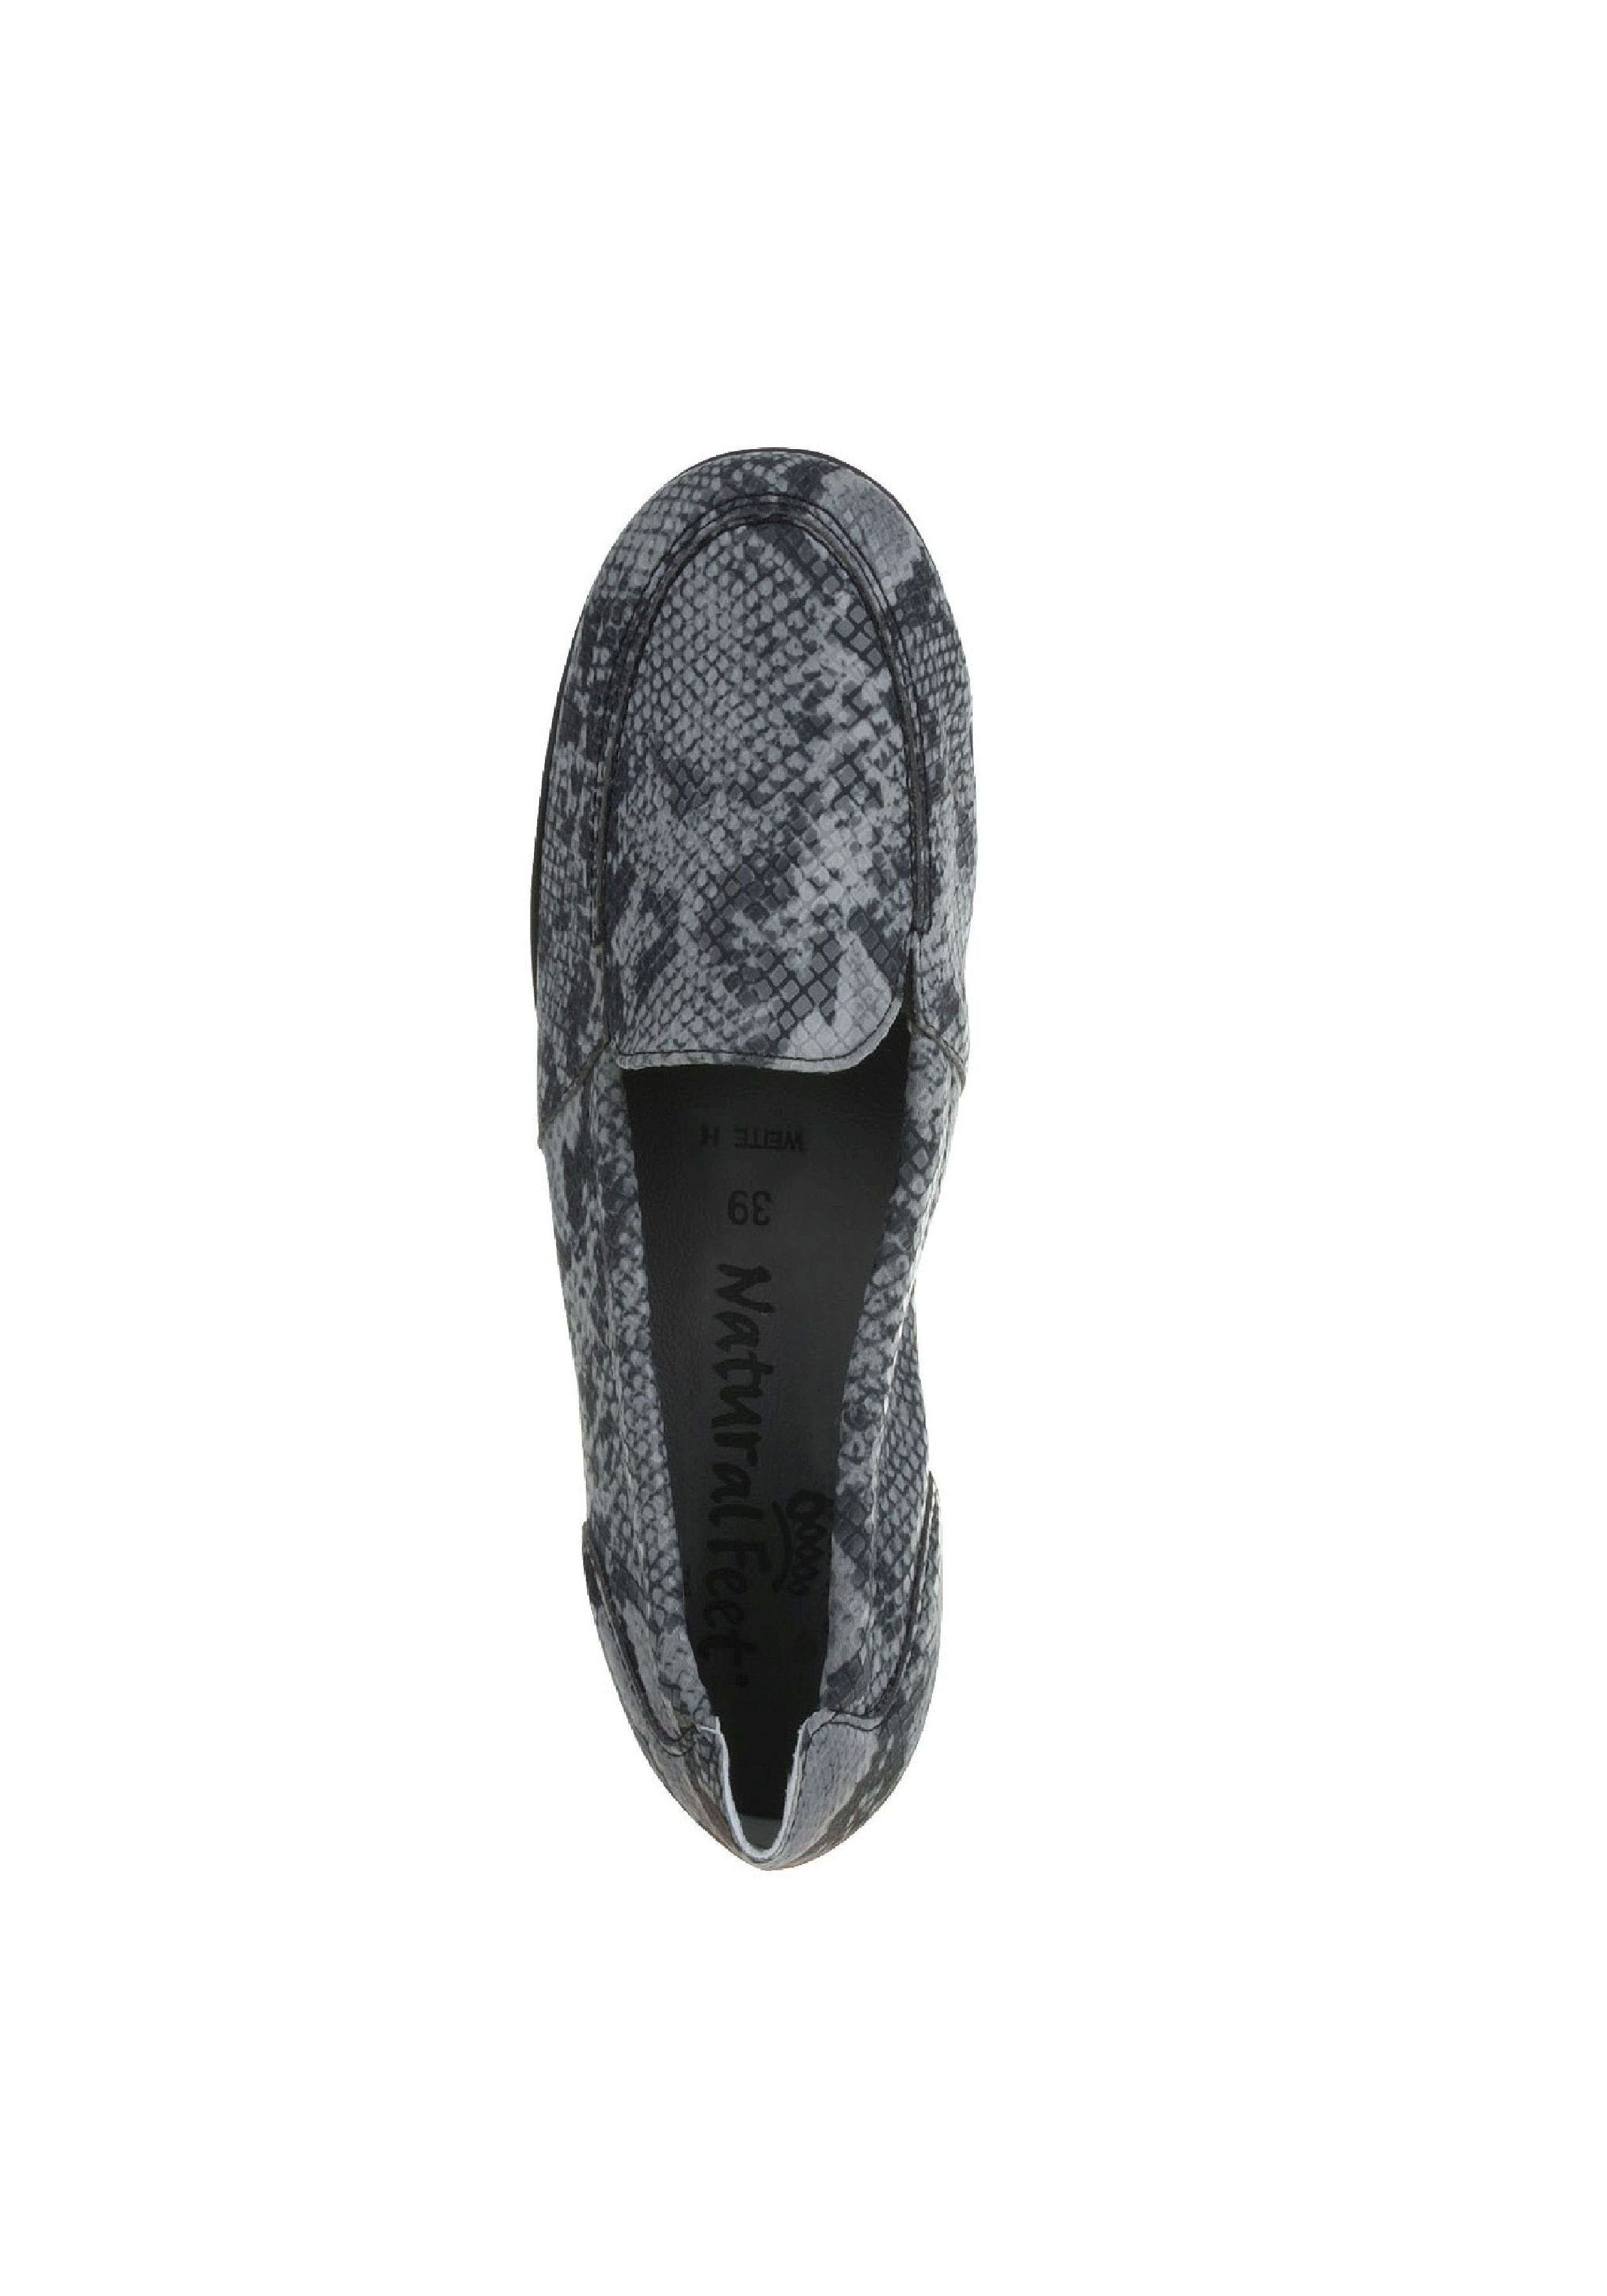 Natural Feet Matilda Slipper Design in schwarz tollem